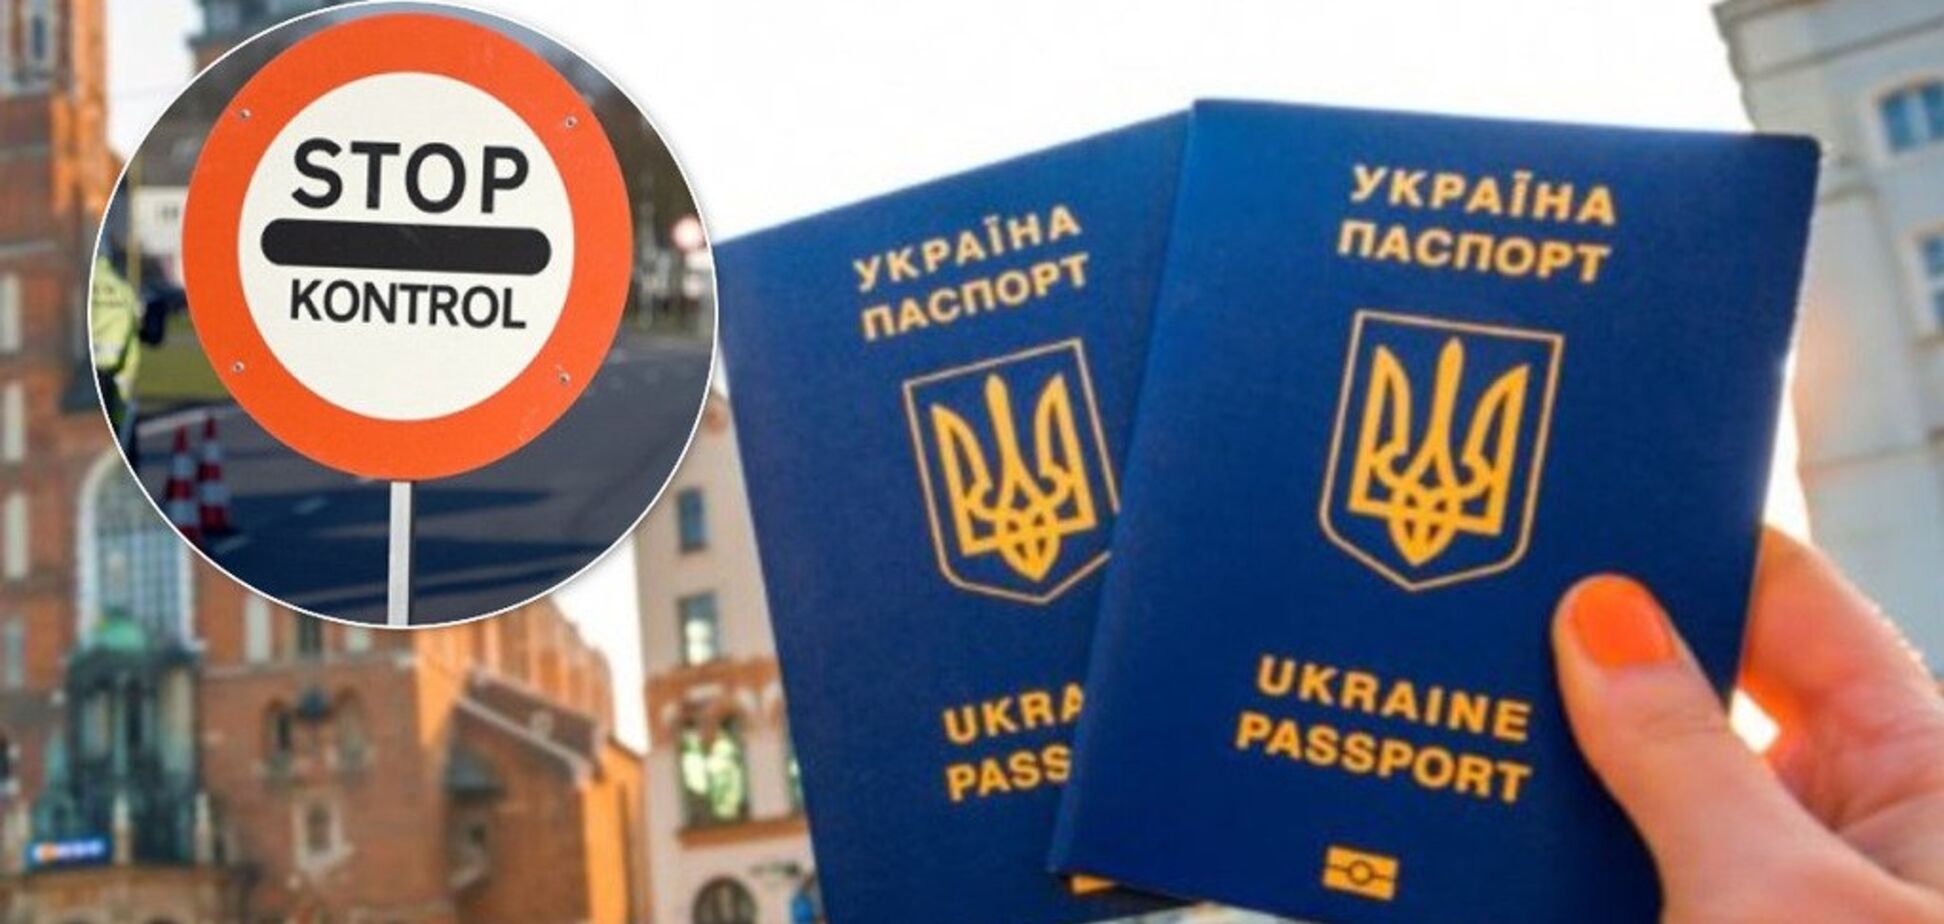 Безвизовый режим для украины в европу в 2018 году
безвизовый режим для украины в европу в 2018 году